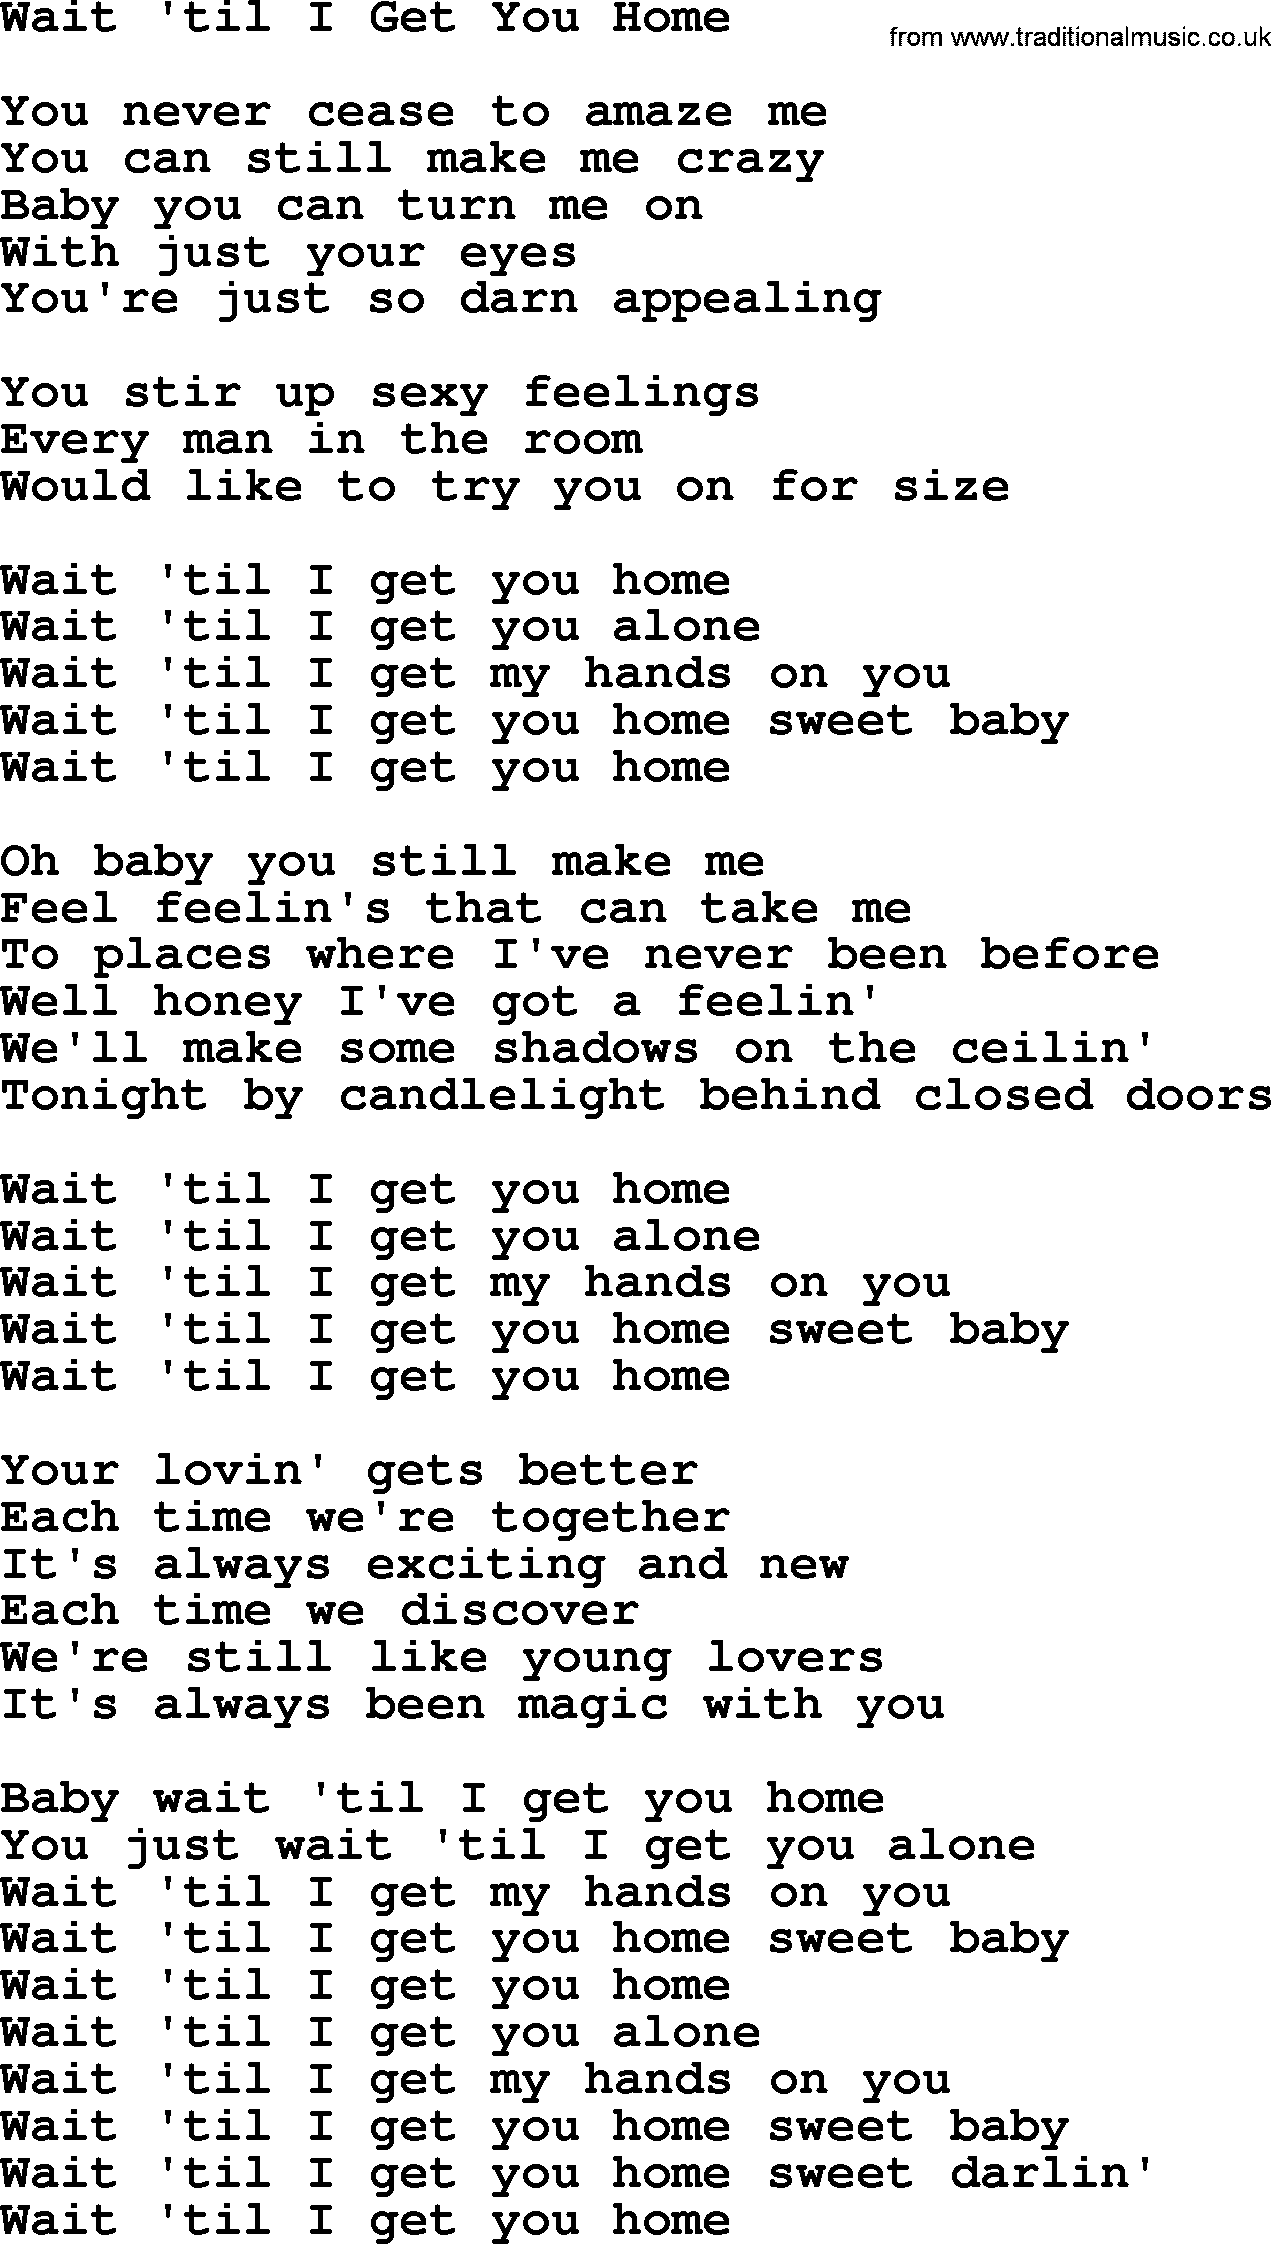 Dolly Parton song Wait 'til I Get You Home.txt lyrics